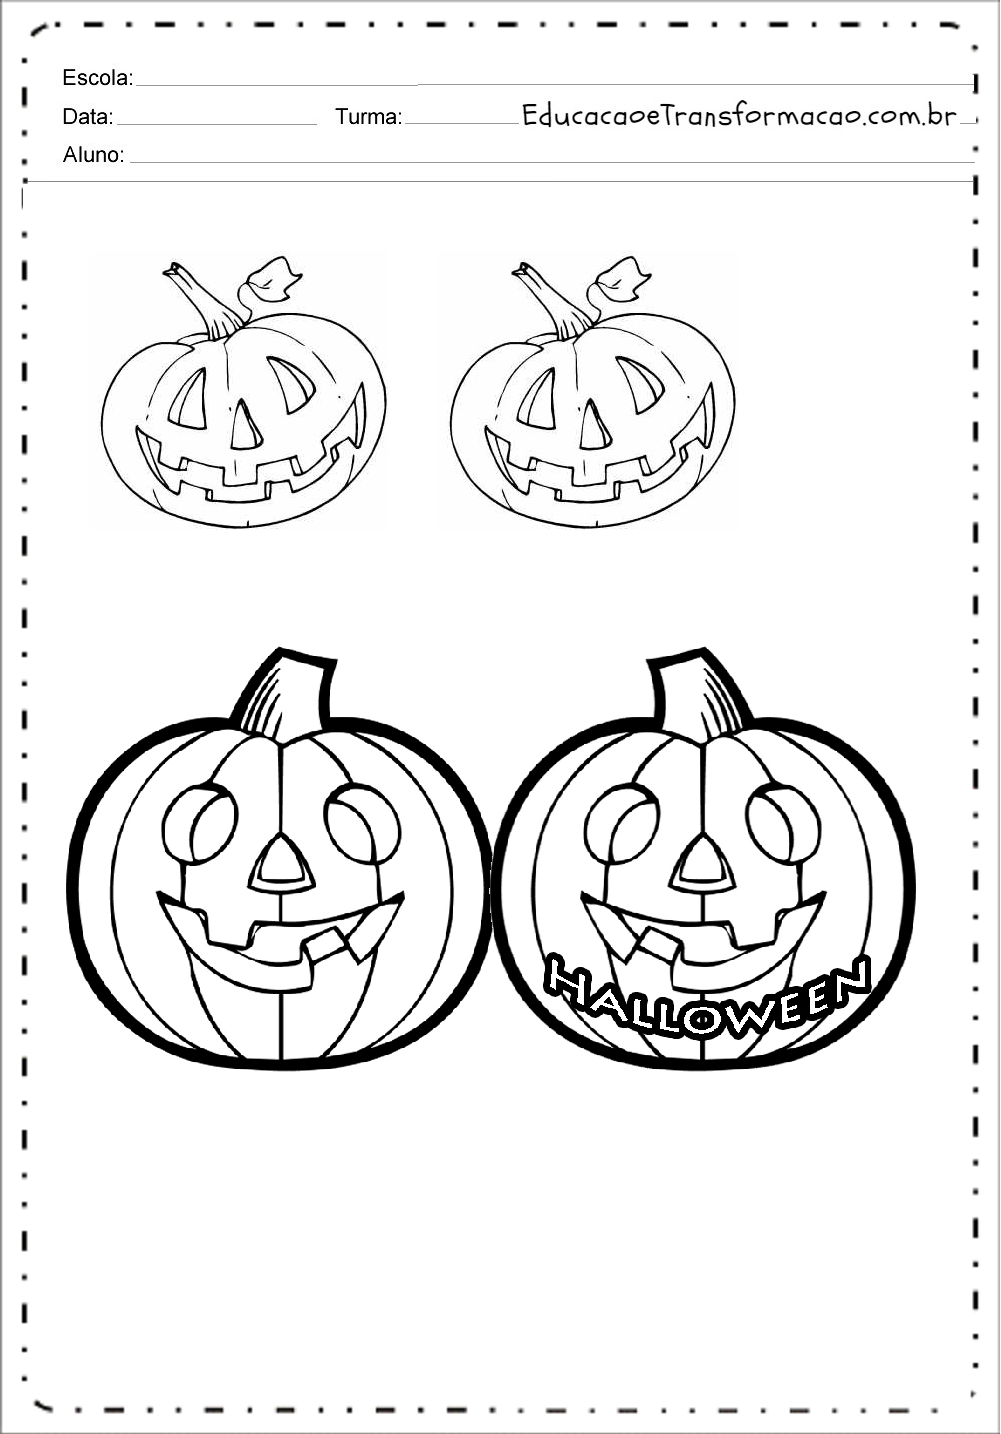 7 Lembrancinhas Dia das Bruxas - Halloween com Moldes para imprimir.